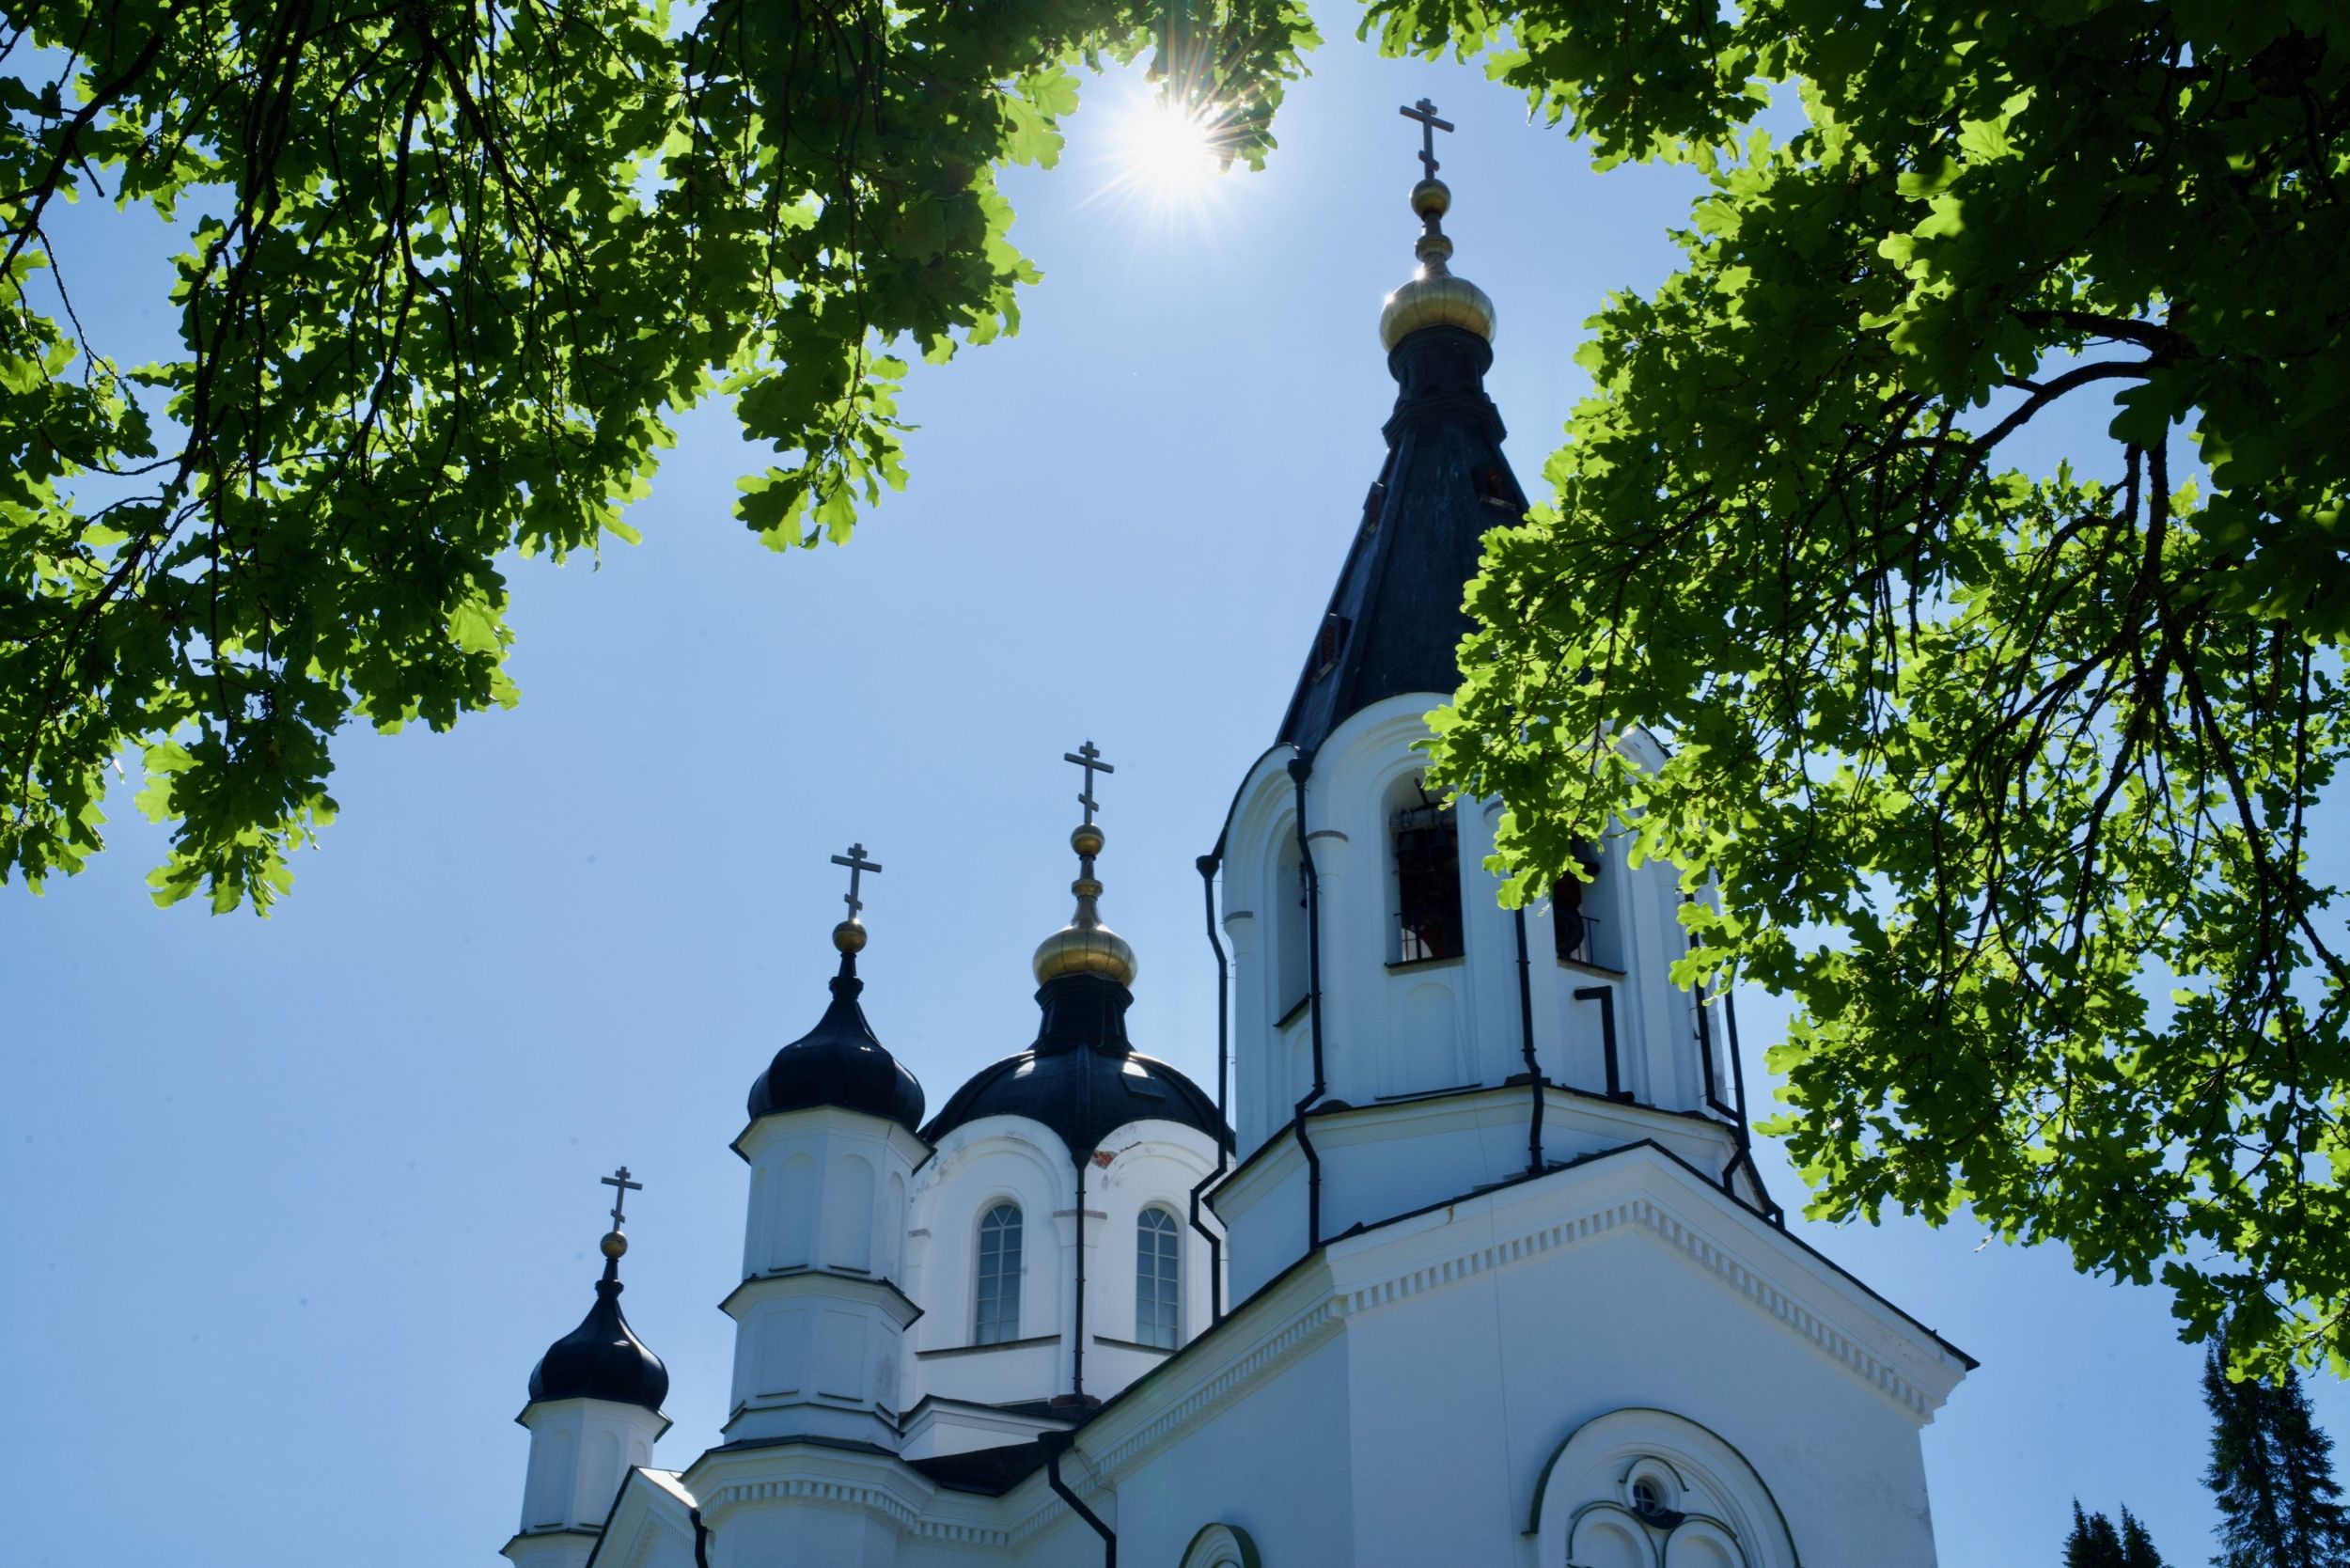 Valamon luostari on yksi Karjalan tasavallan ja koko Pohjois-Venäjän merkittävimmistä nähtävyyksistä, jota useat turistit käyvät ihailemassa. Kuva: Valamon luostarin VKontakte-sivu